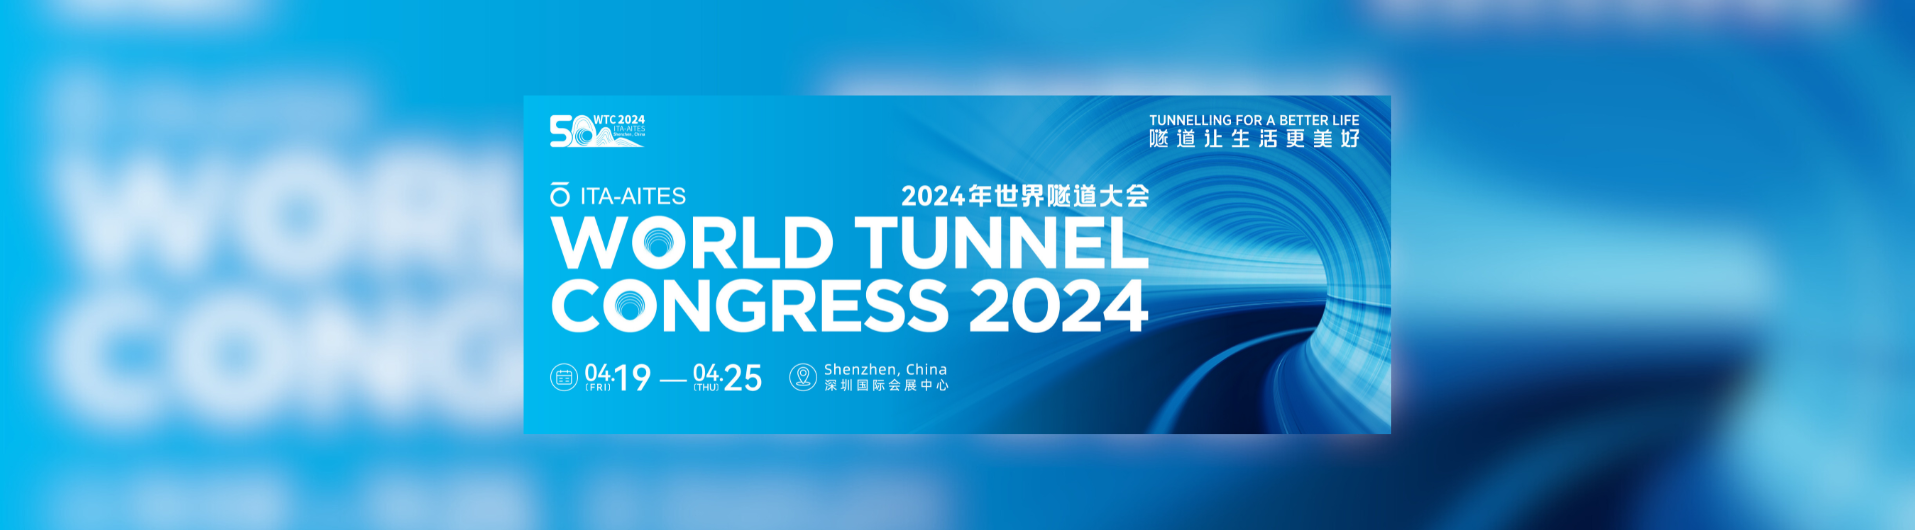 世界隧道大会 2024